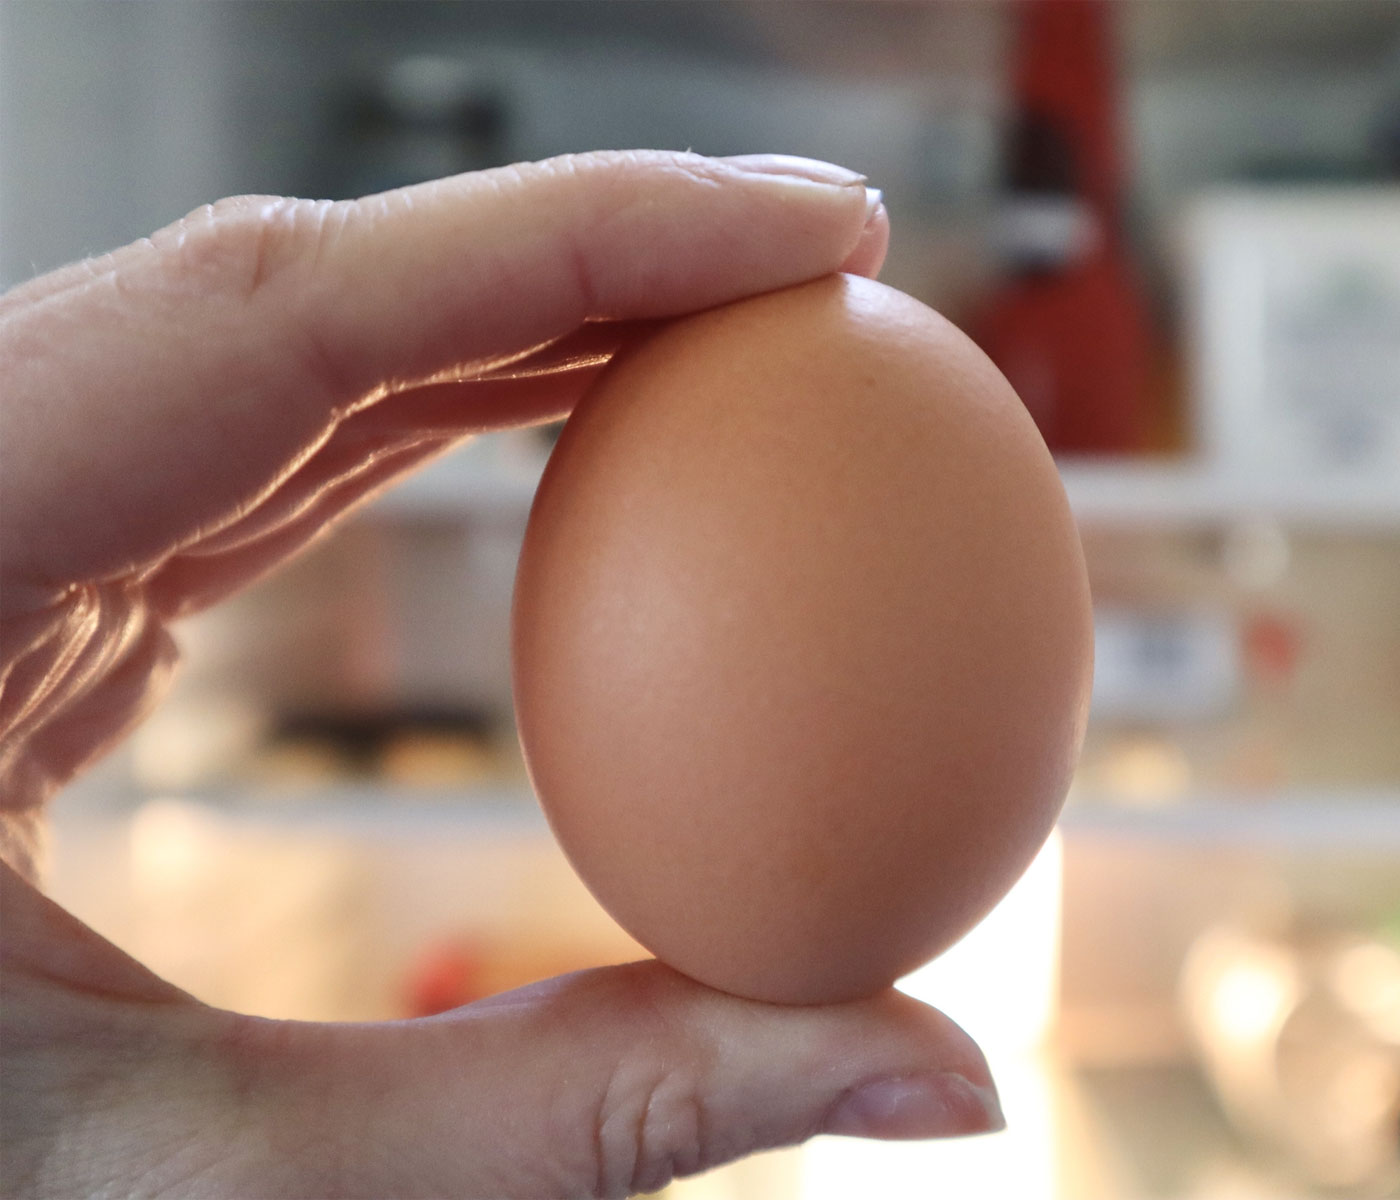 El huevo, uno de los alimentos más sostenibles que existen